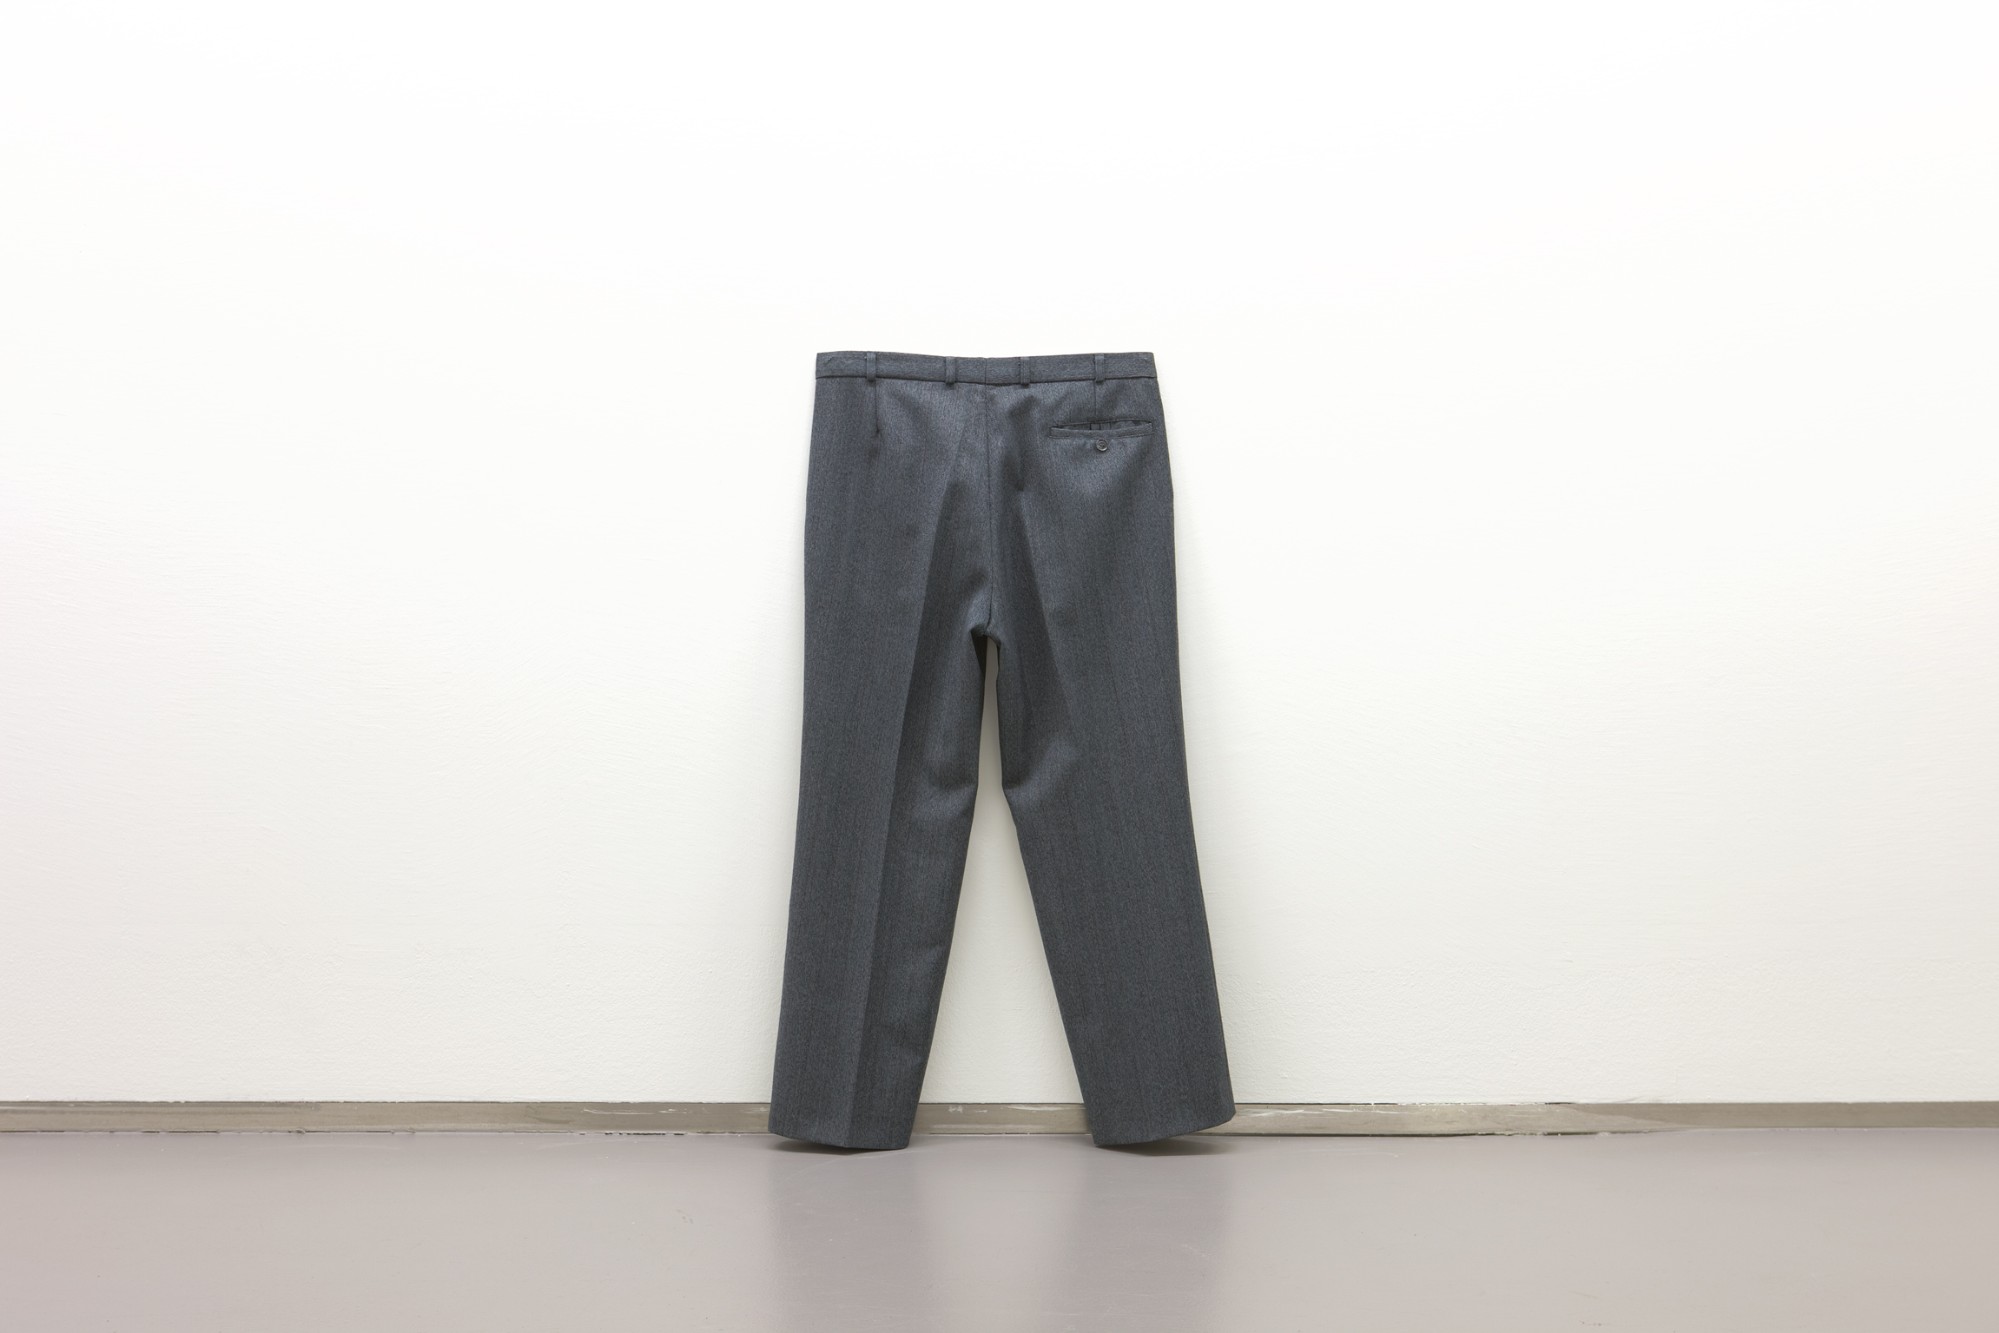 Anna Kolodziejska, Ohne Titel (18.30), 2012, man trousers, 101 x 43 x 9 cm